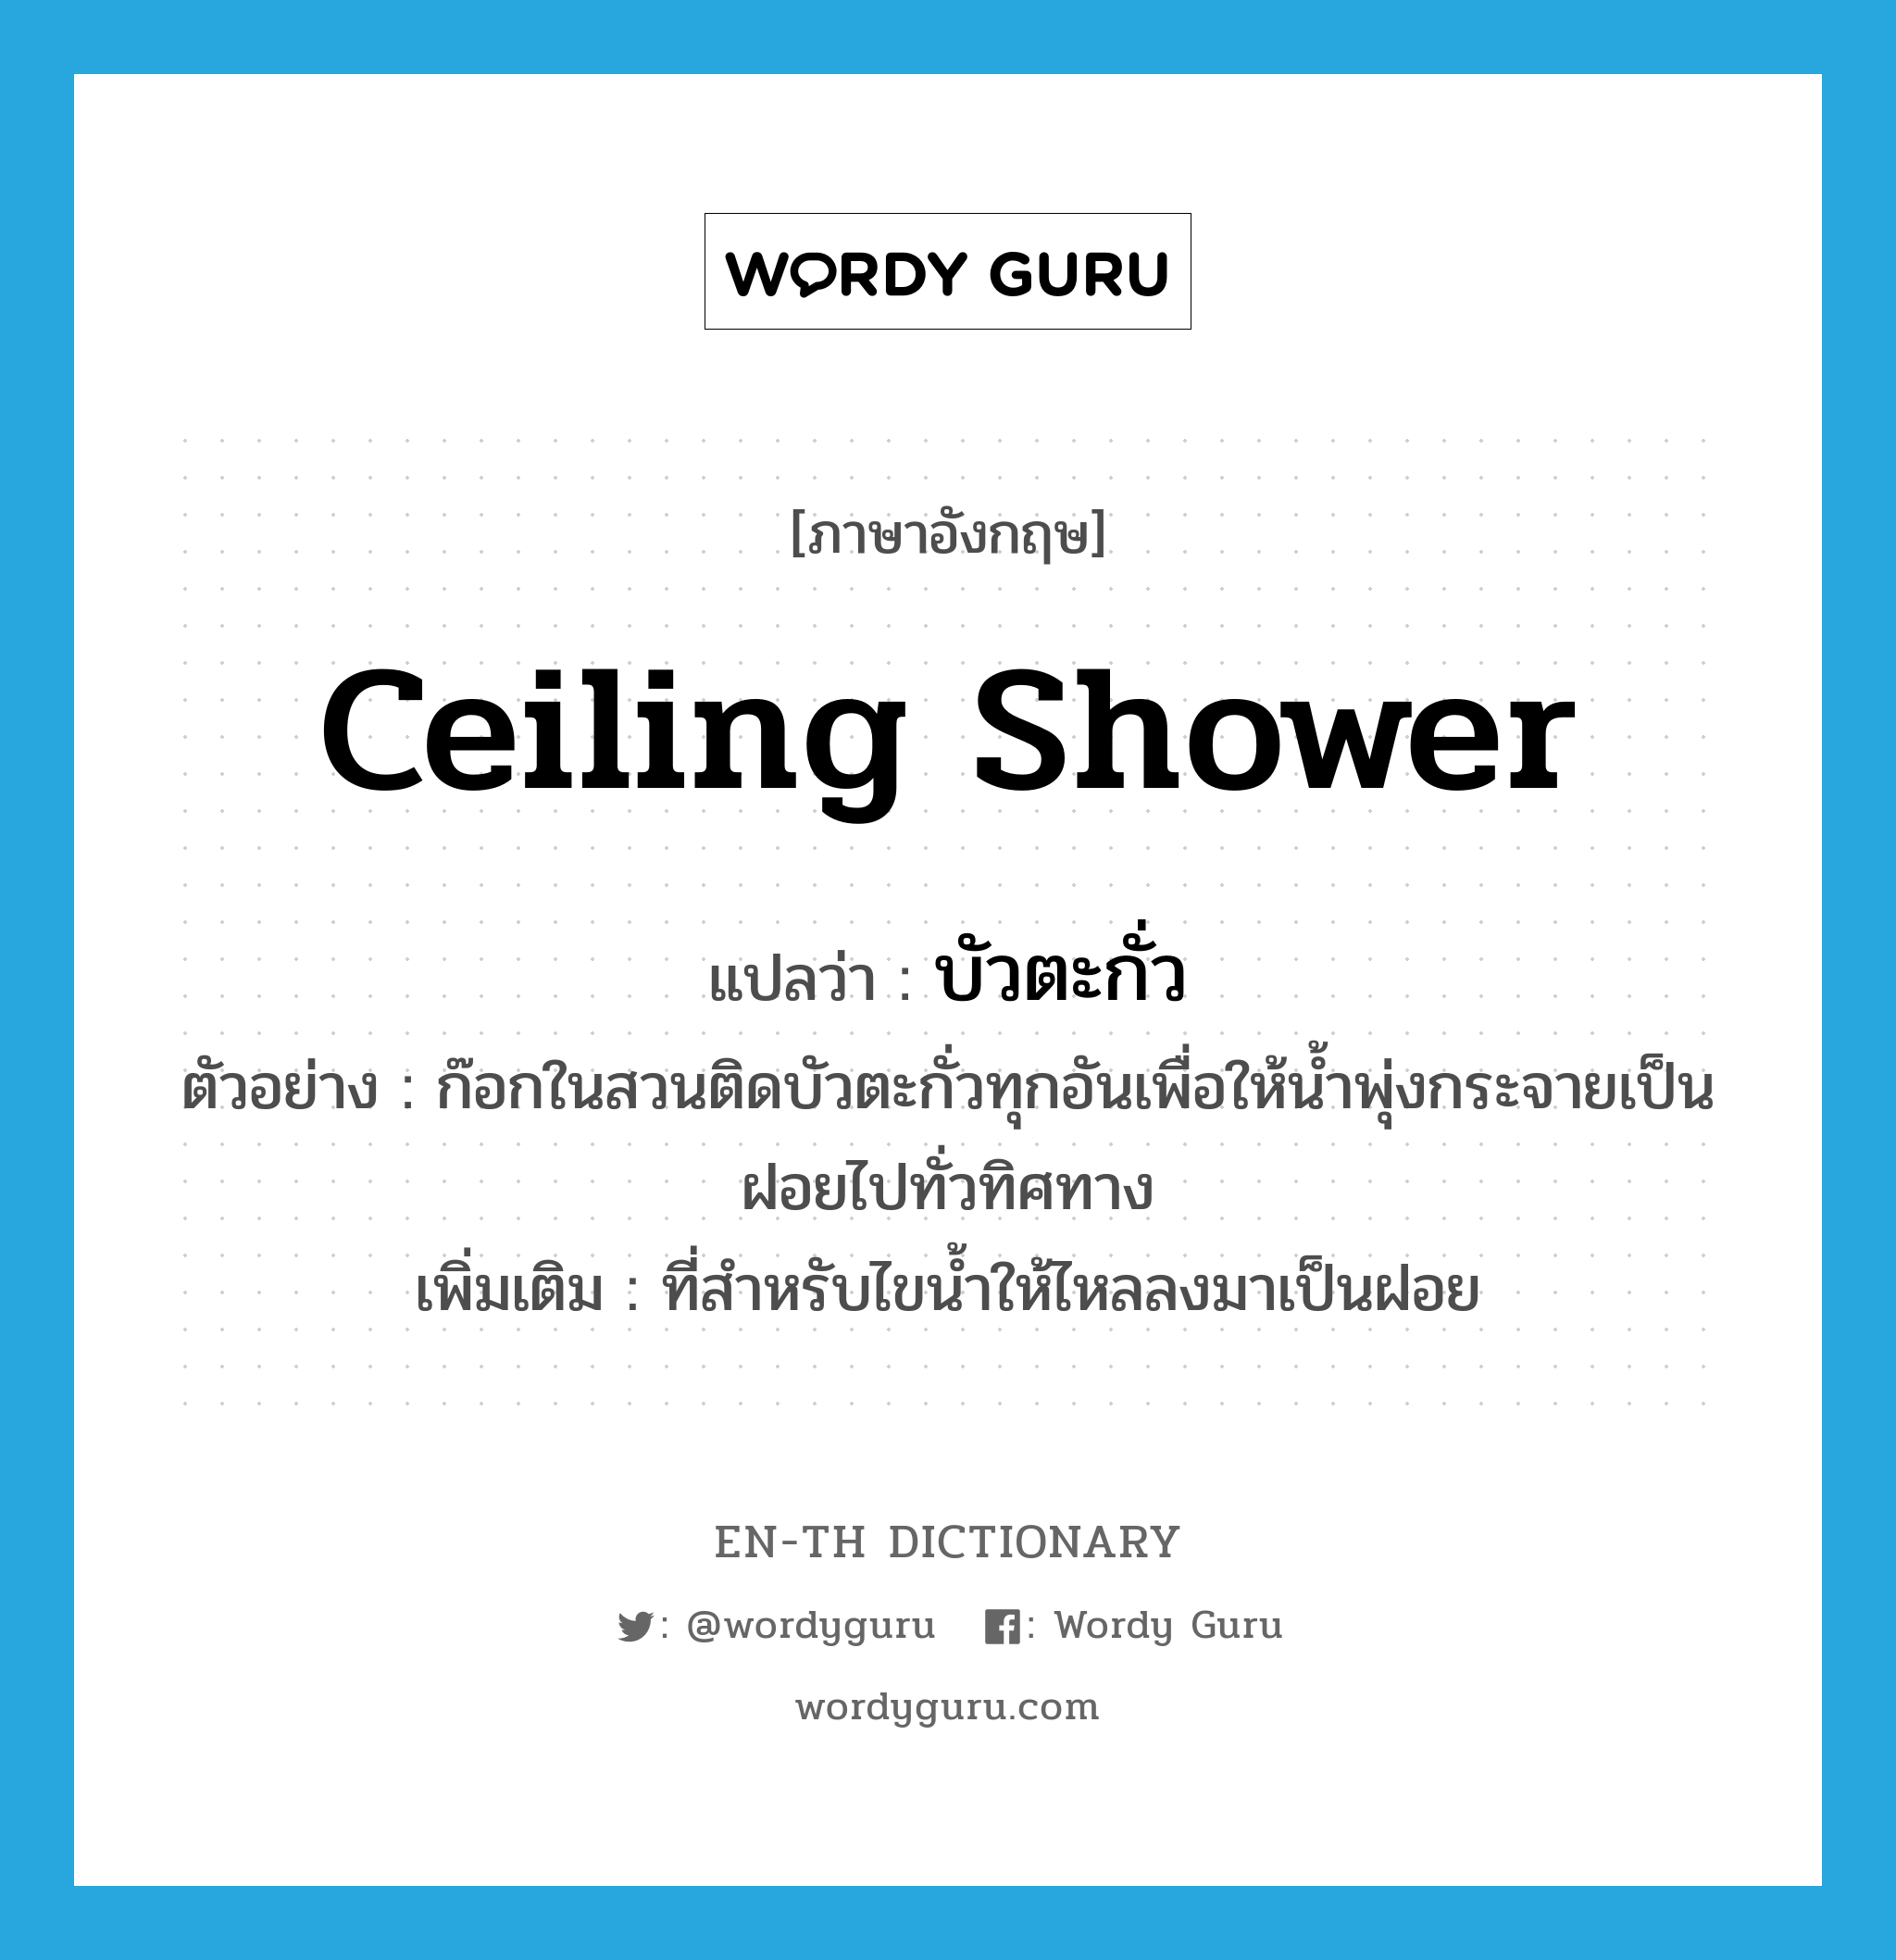 ceiling shower แปลว่า?, คำศัพท์ภาษาอังกฤษ ceiling shower แปลว่า บัวตะกั่ว ประเภท N ตัวอย่าง ก๊อกในสวนติดบัวตะกั่วทุกอันเพื่อให้น้ำพุ่งกระจายเป็นฝอยไปทั่วทิศทาง เพิ่มเติม ที่สำหรับไขน้ำให้ไหลลงมาเป็นฝอย หมวด N